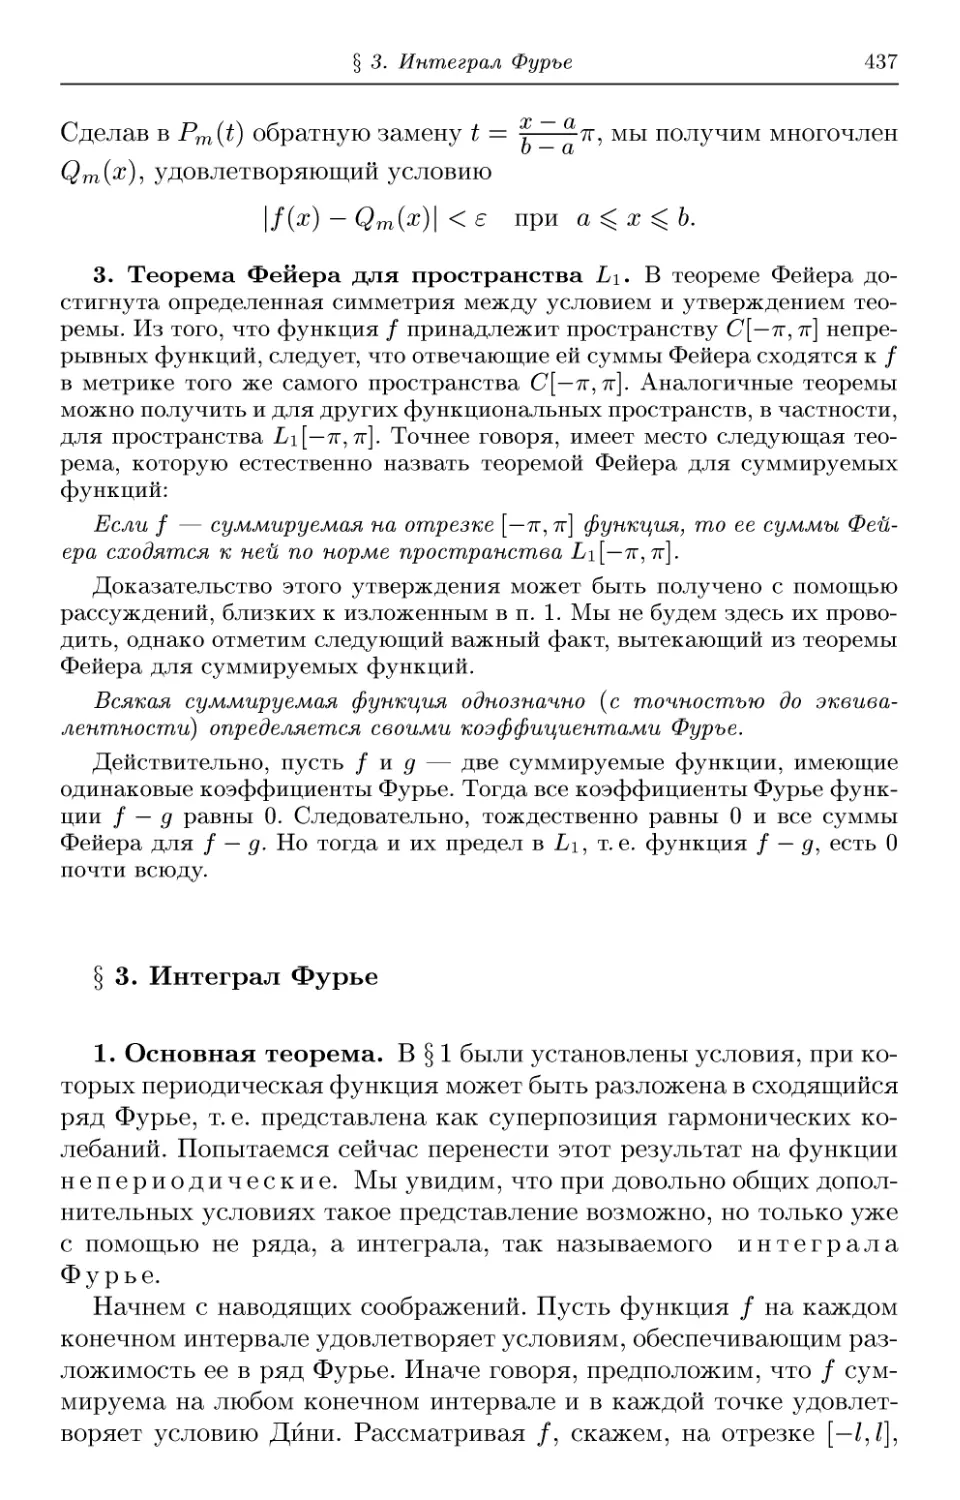 3. Теорема Фейера для пространства L1
§ 3. Интеграл Фурье